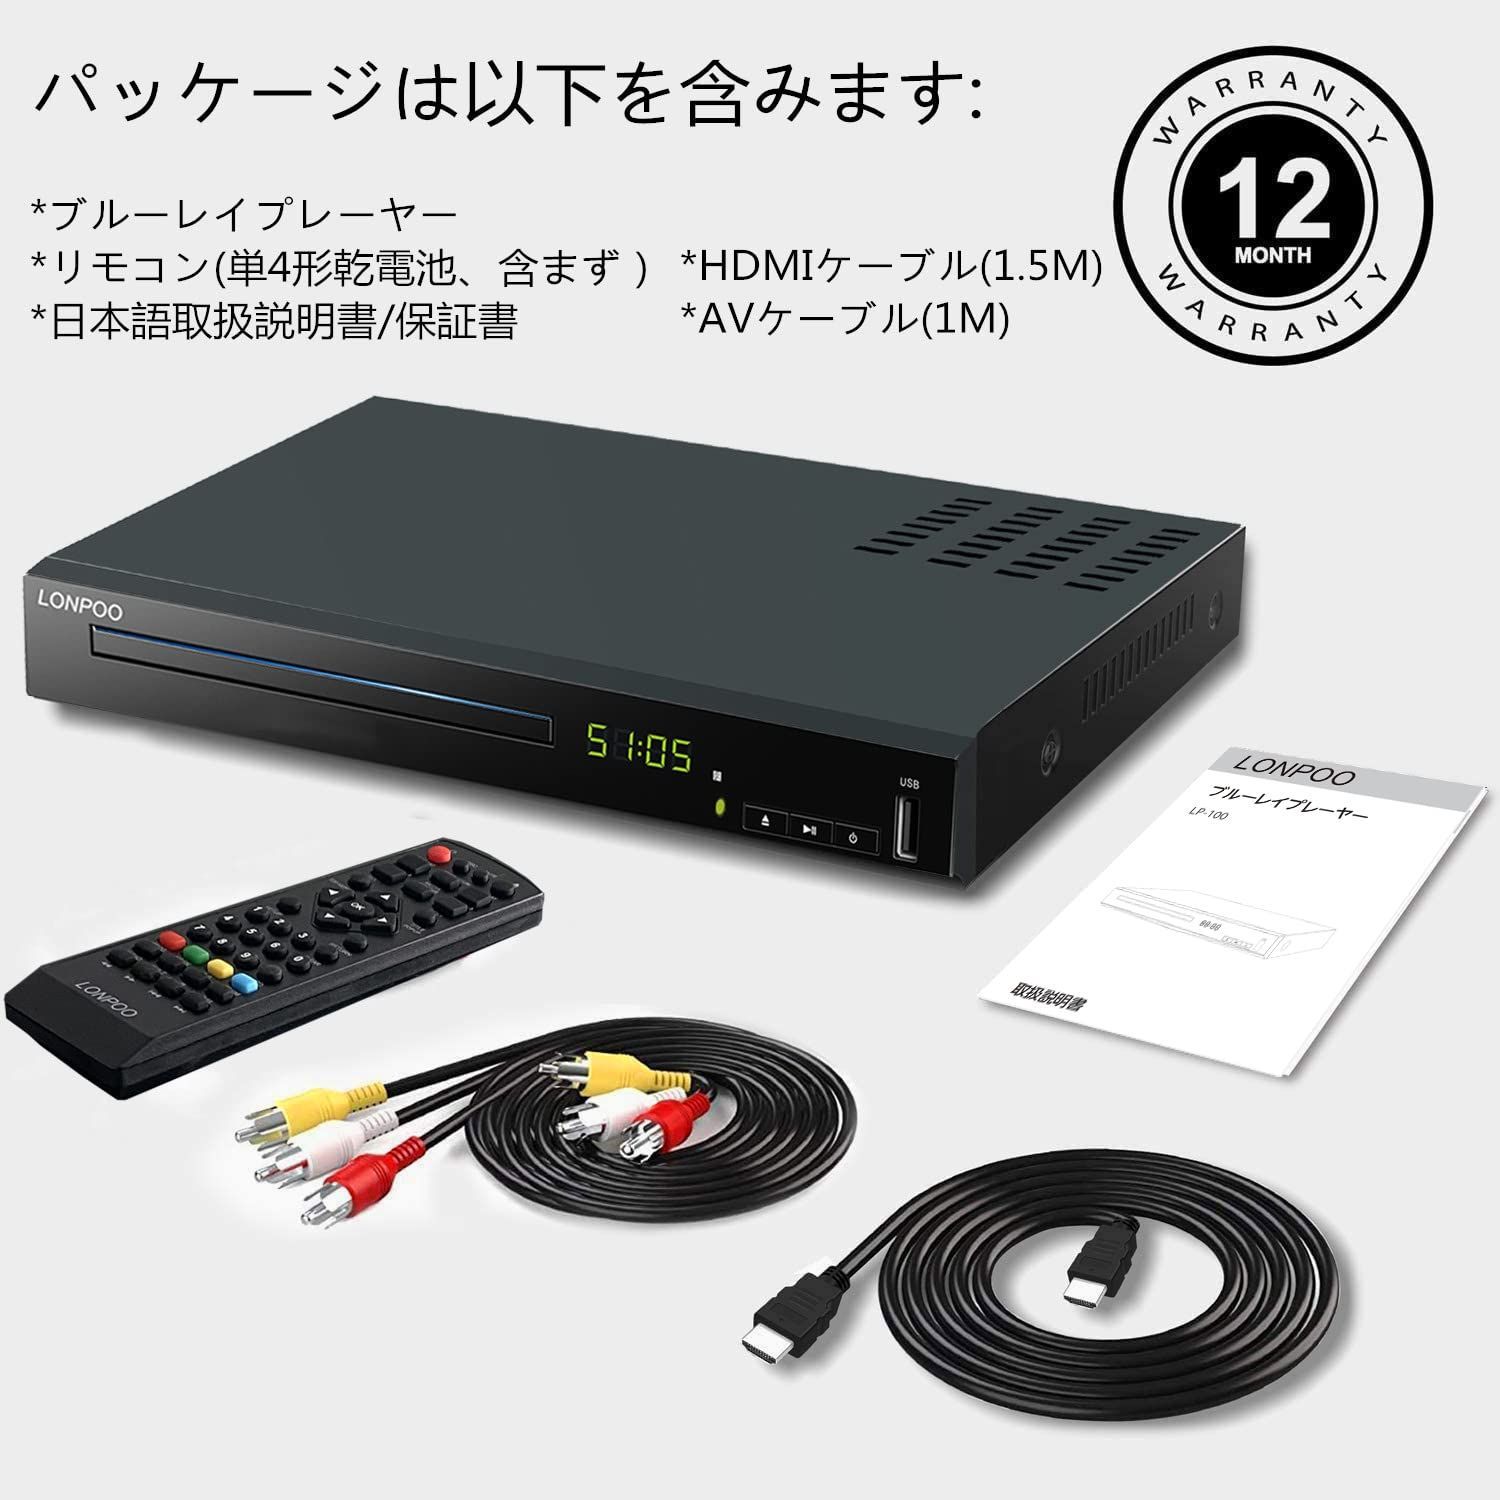 【色: 黑】LONPOO DVD ブルーレイプレーヤー フルHD1080p DV